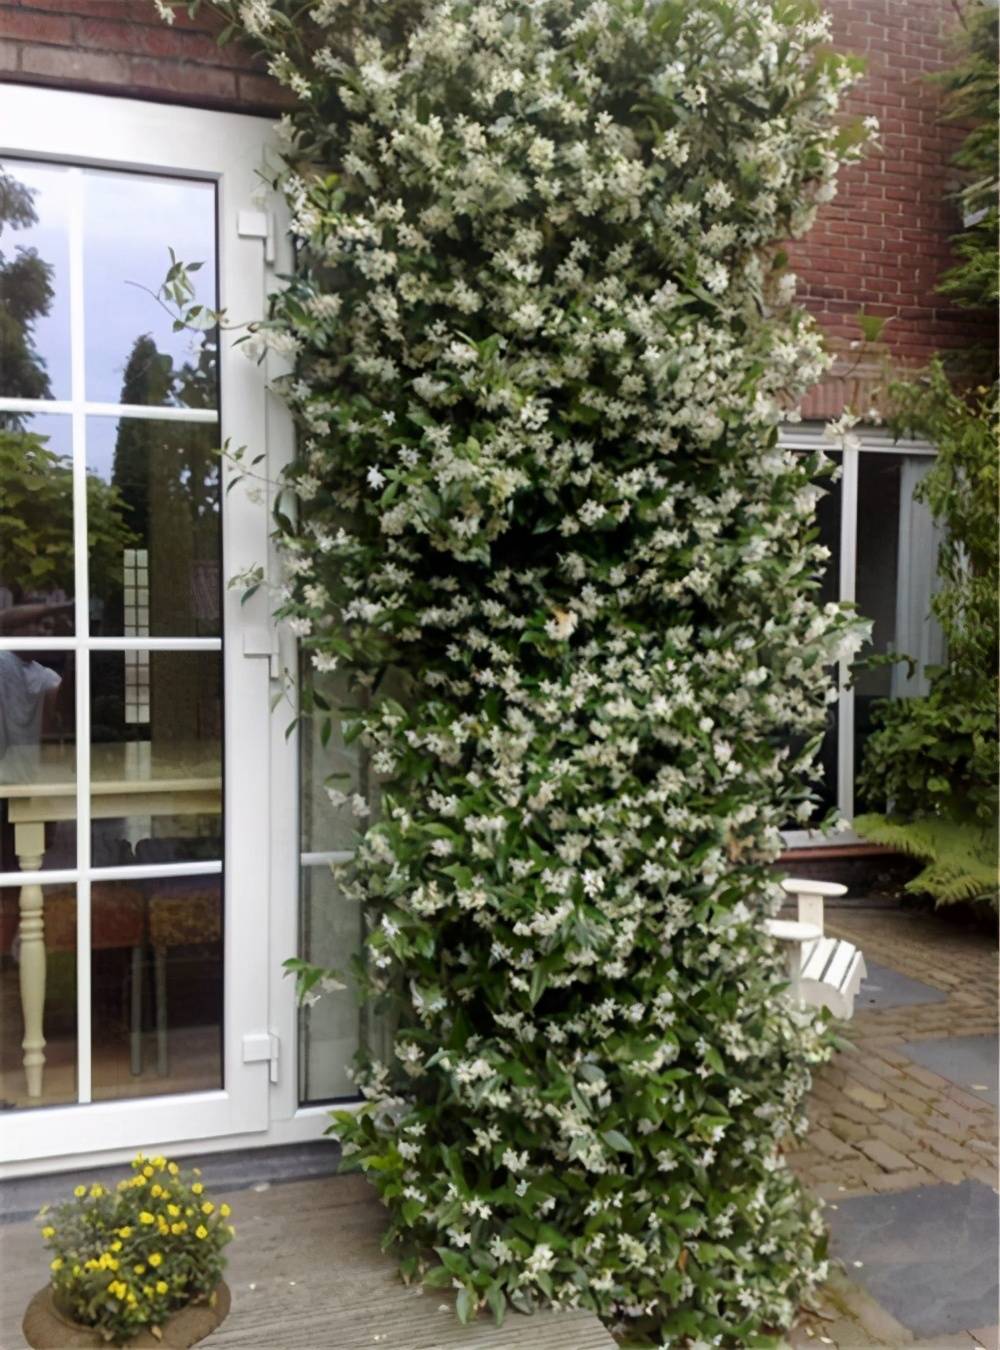 原创一种极美的藤本植物喜欢爬墙开茉莉花名叫风车茉莉不养可惜了